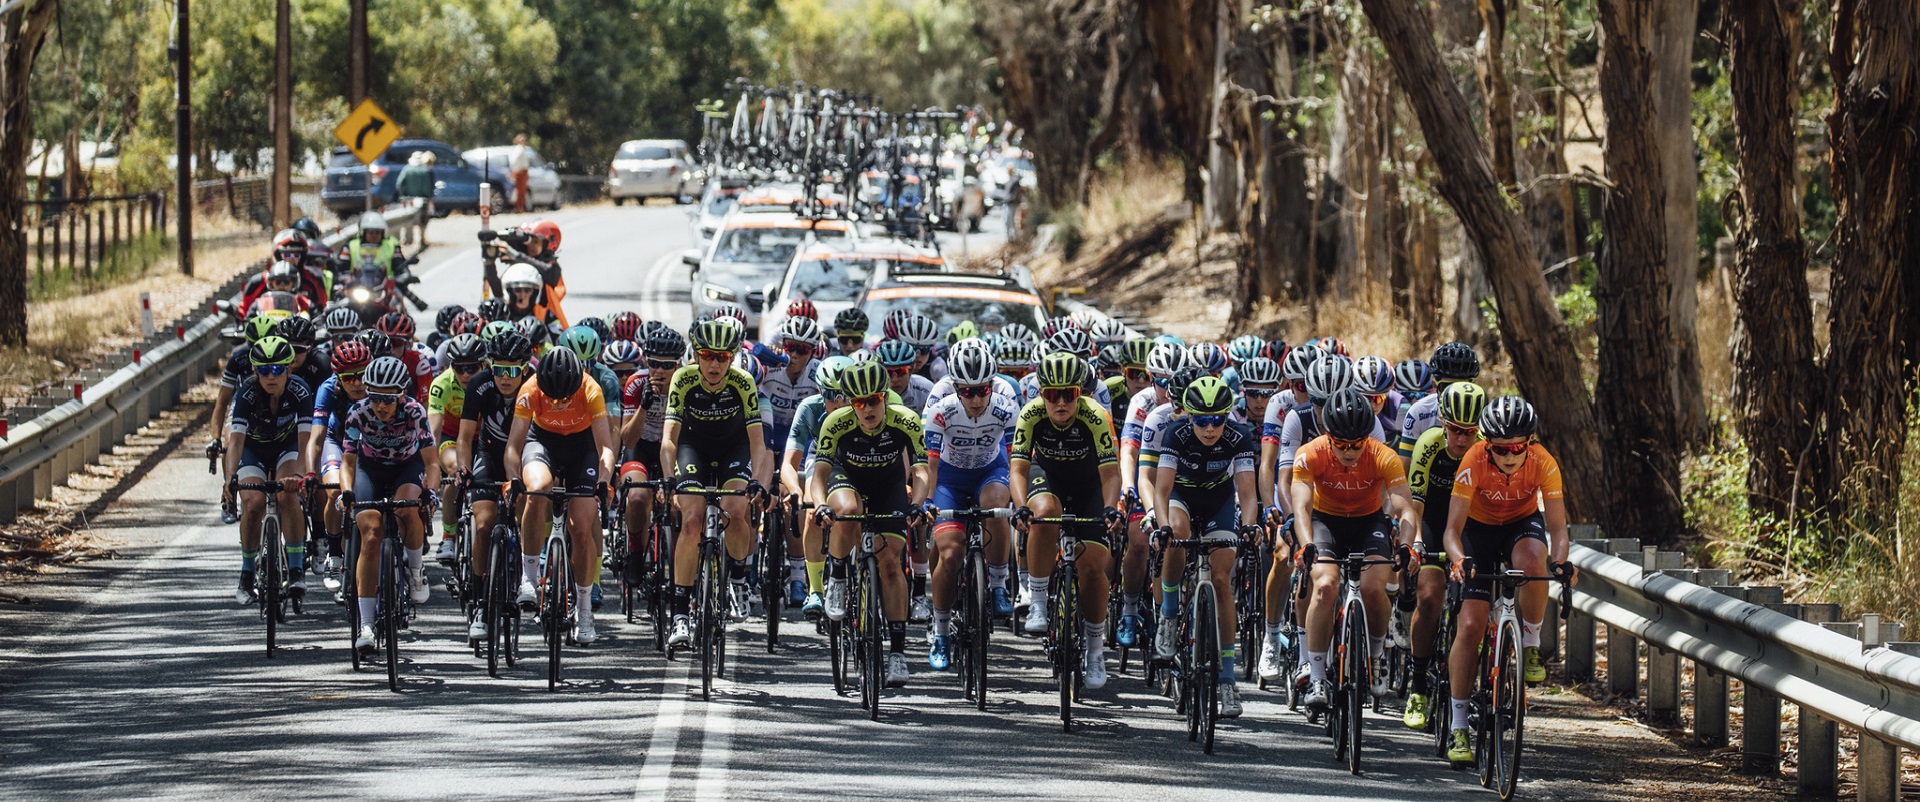 Santos Tour Down Under women's race routes announced Tourism SA